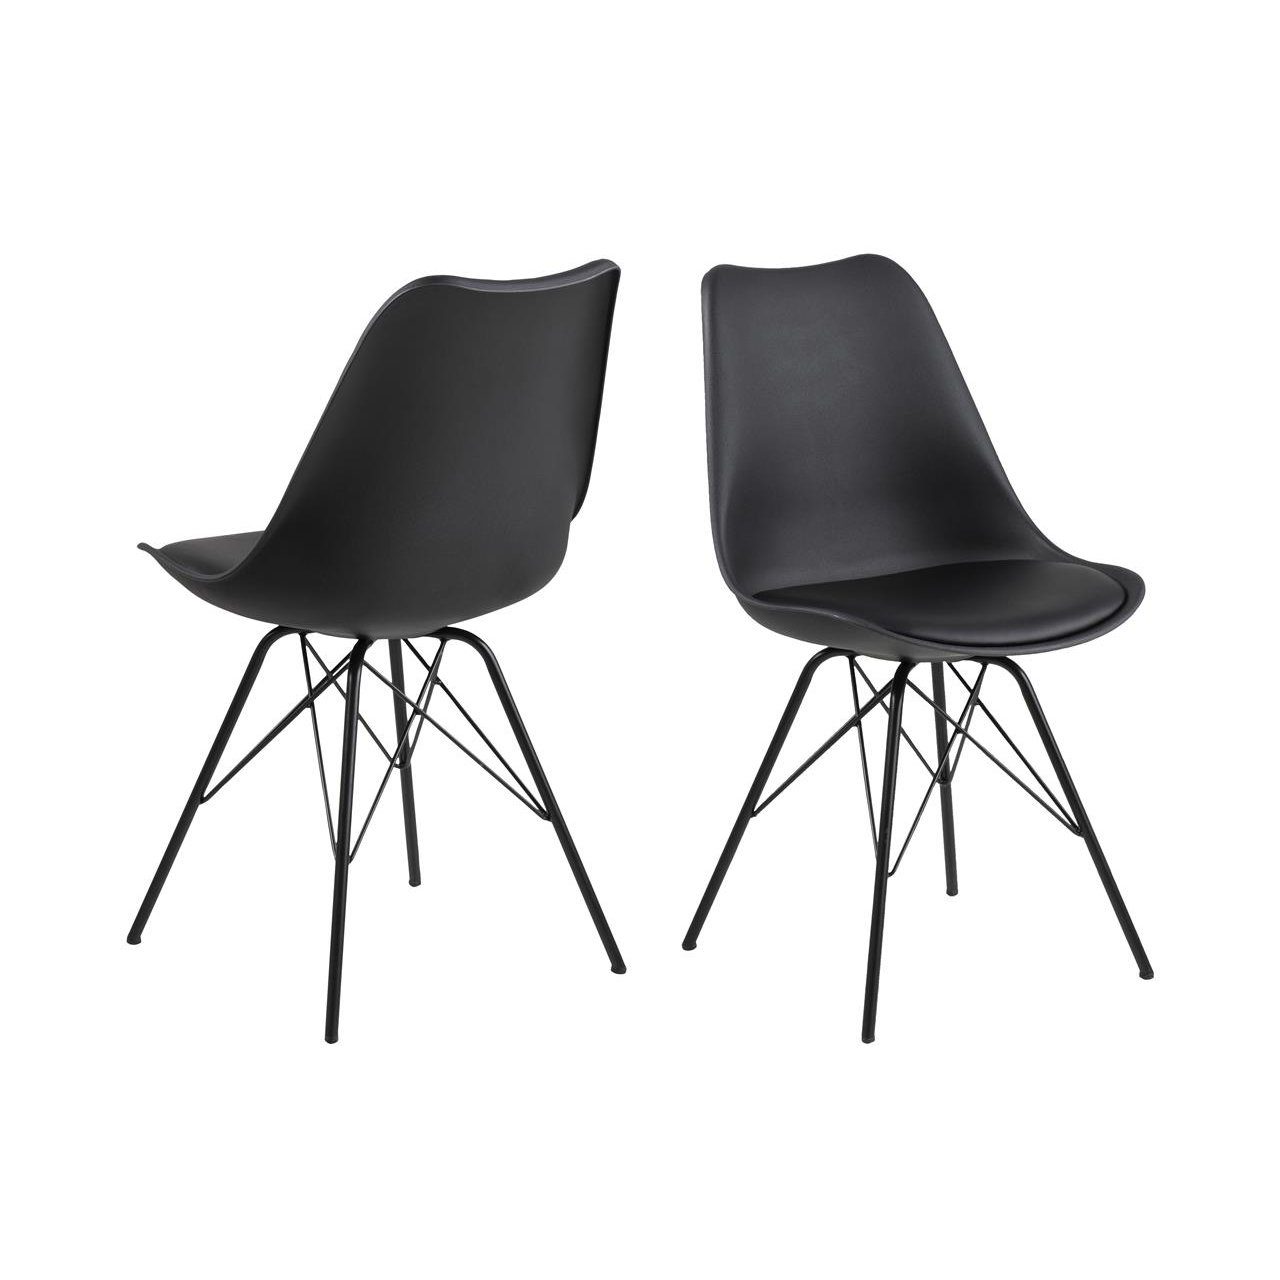 Trendstore „Ariane“ Stuhl mit Bezug aus Kunstleder in Schwarz und Metallgestell.